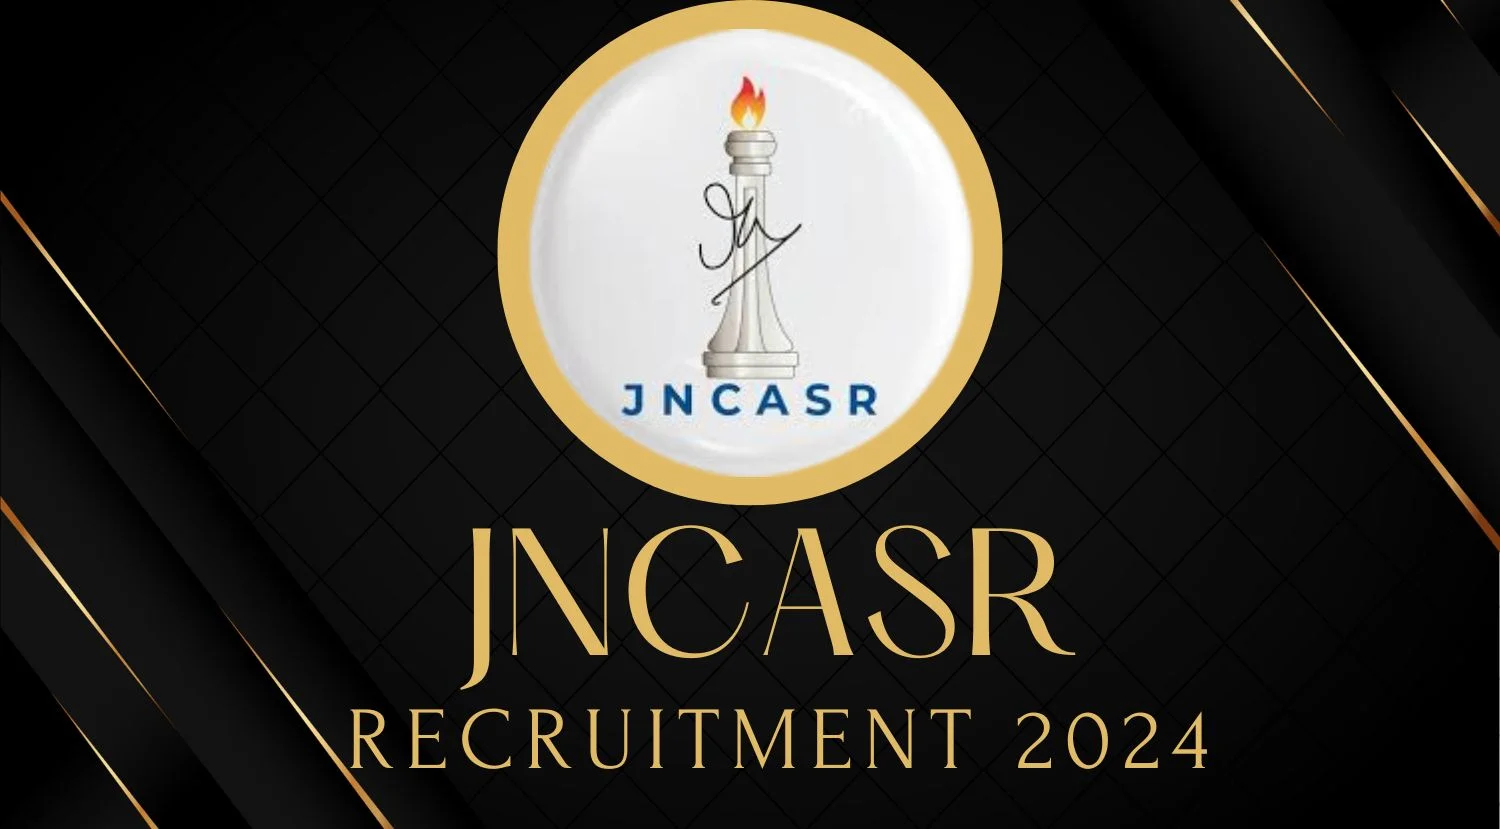 JNCASR Research Associate Recruitment 2024